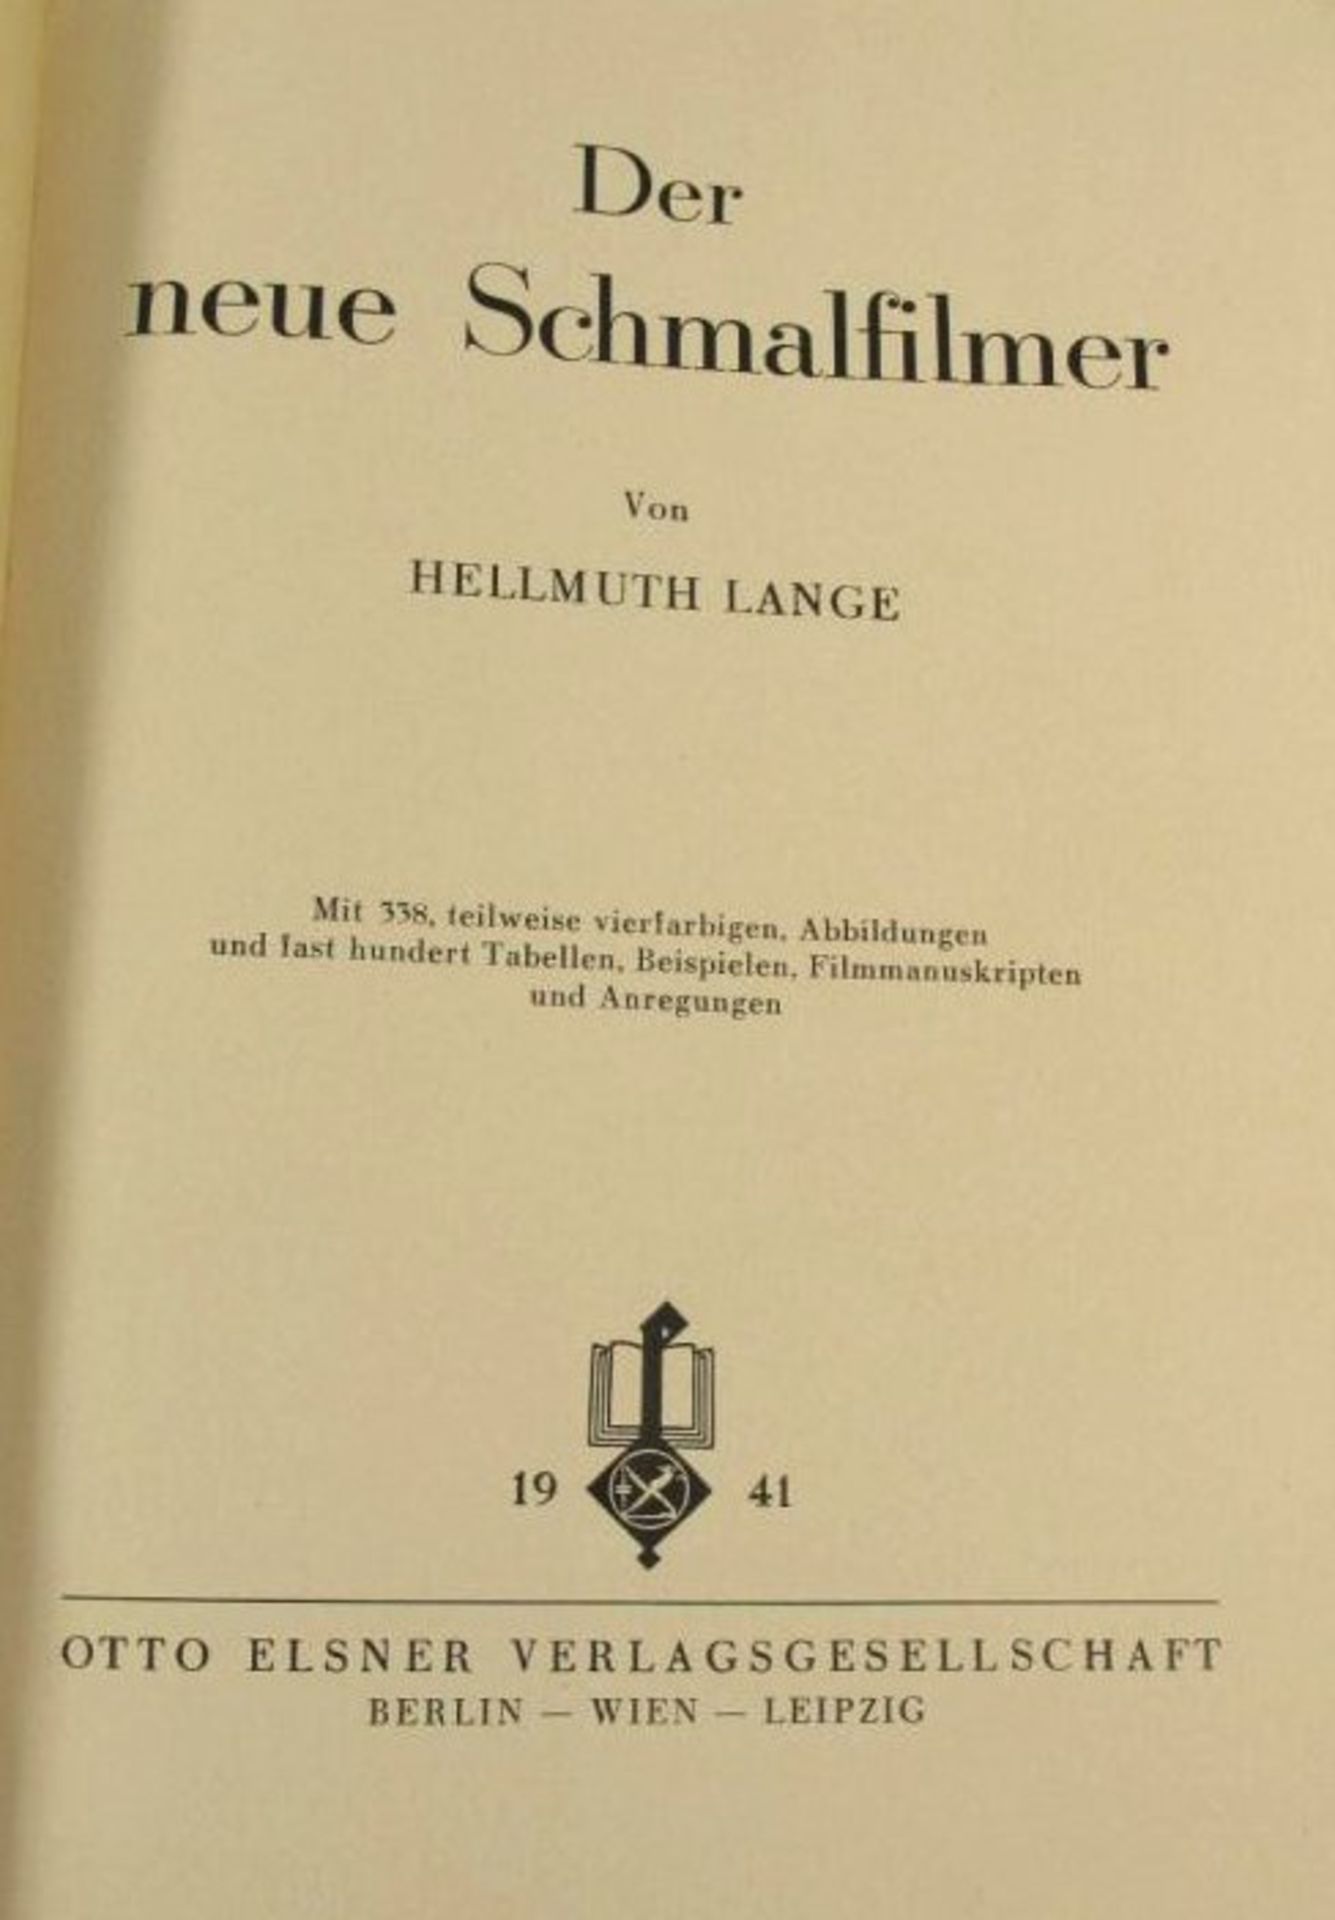 Der neue Schmalfilmer, Hellmuth Lange, 1941, Alters-u. Gebrauchsspuren. - Bild 2 aus 2